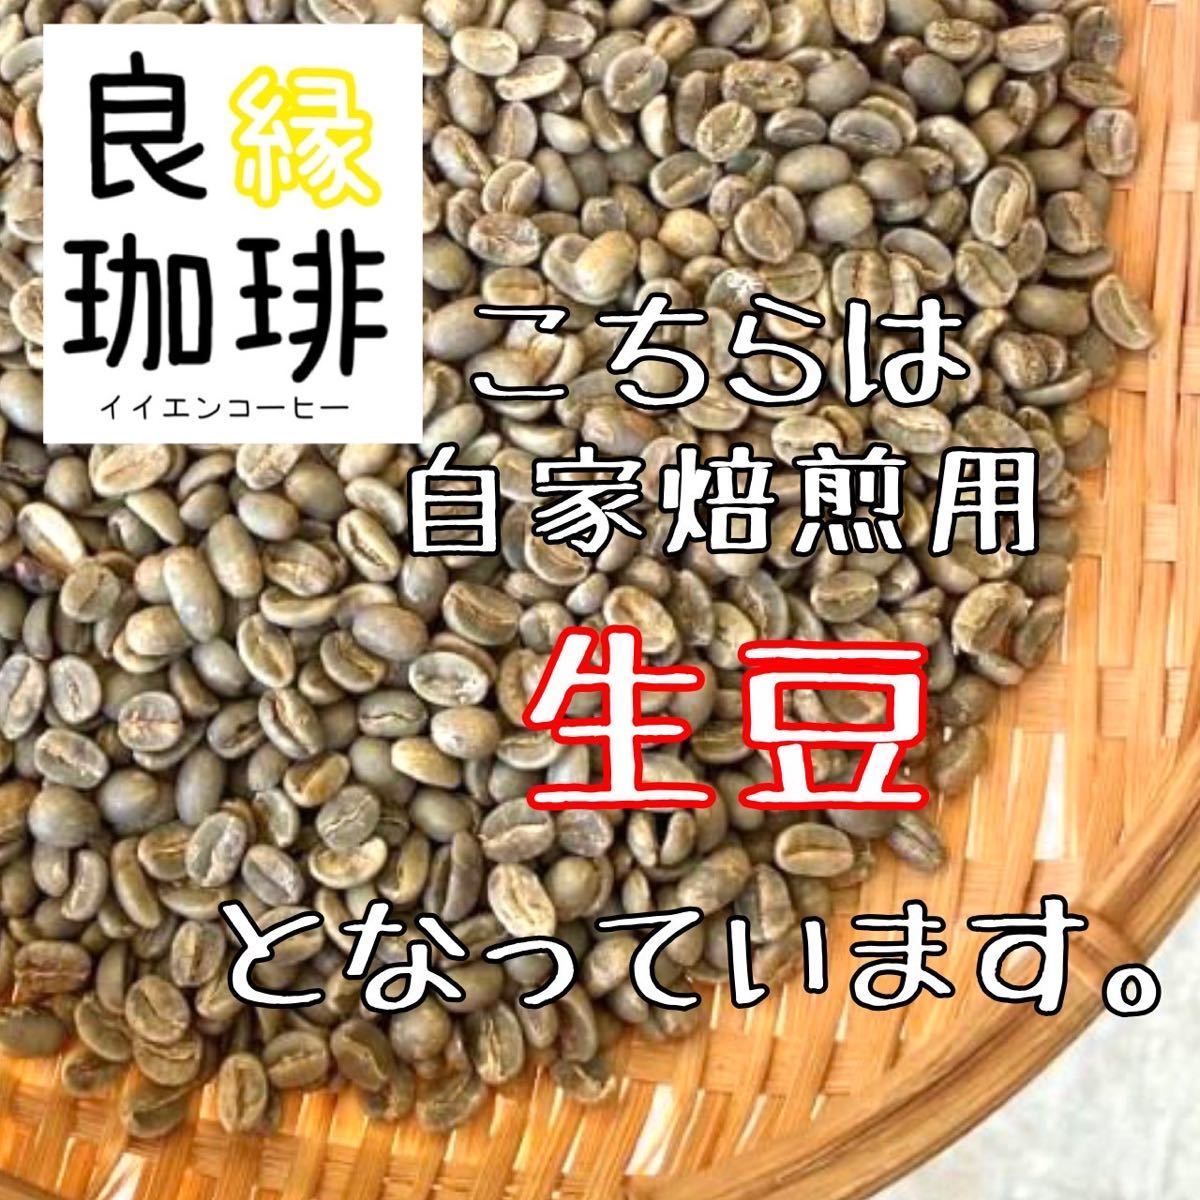 【最安値】生豆 ブラジル クィーンショコラ Qグレード 200g コーヒー豆_画像4